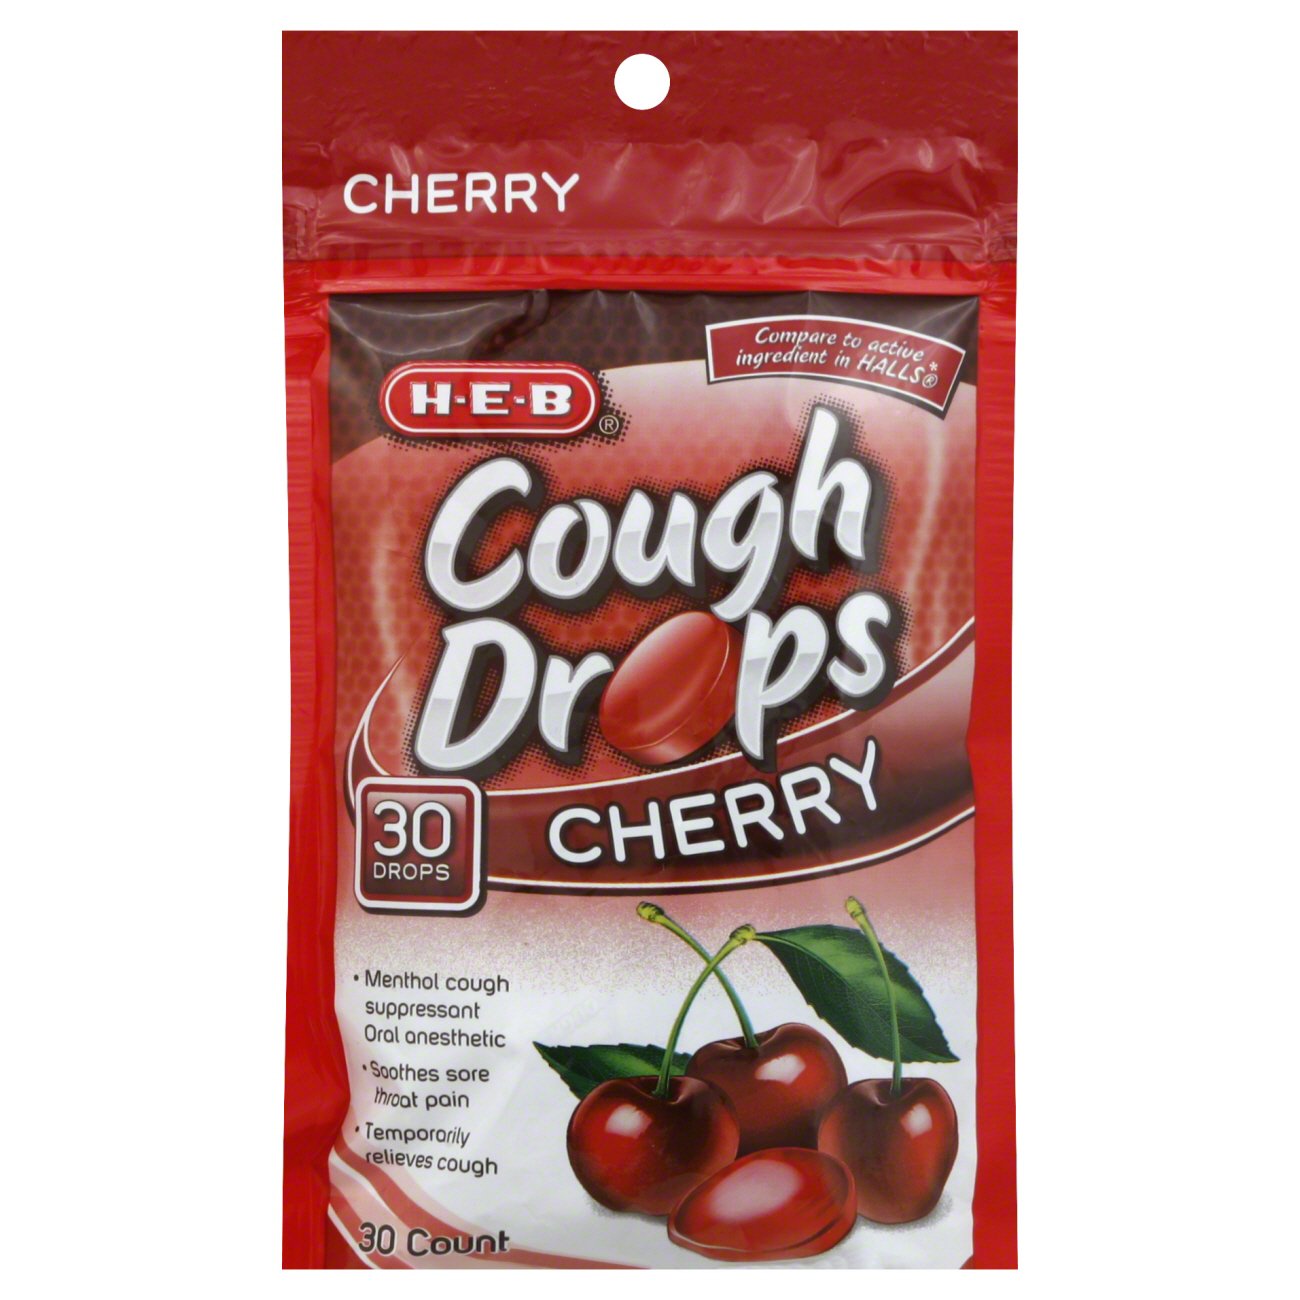 HALLS Relief Cherry Cough Drops, 30 Drops